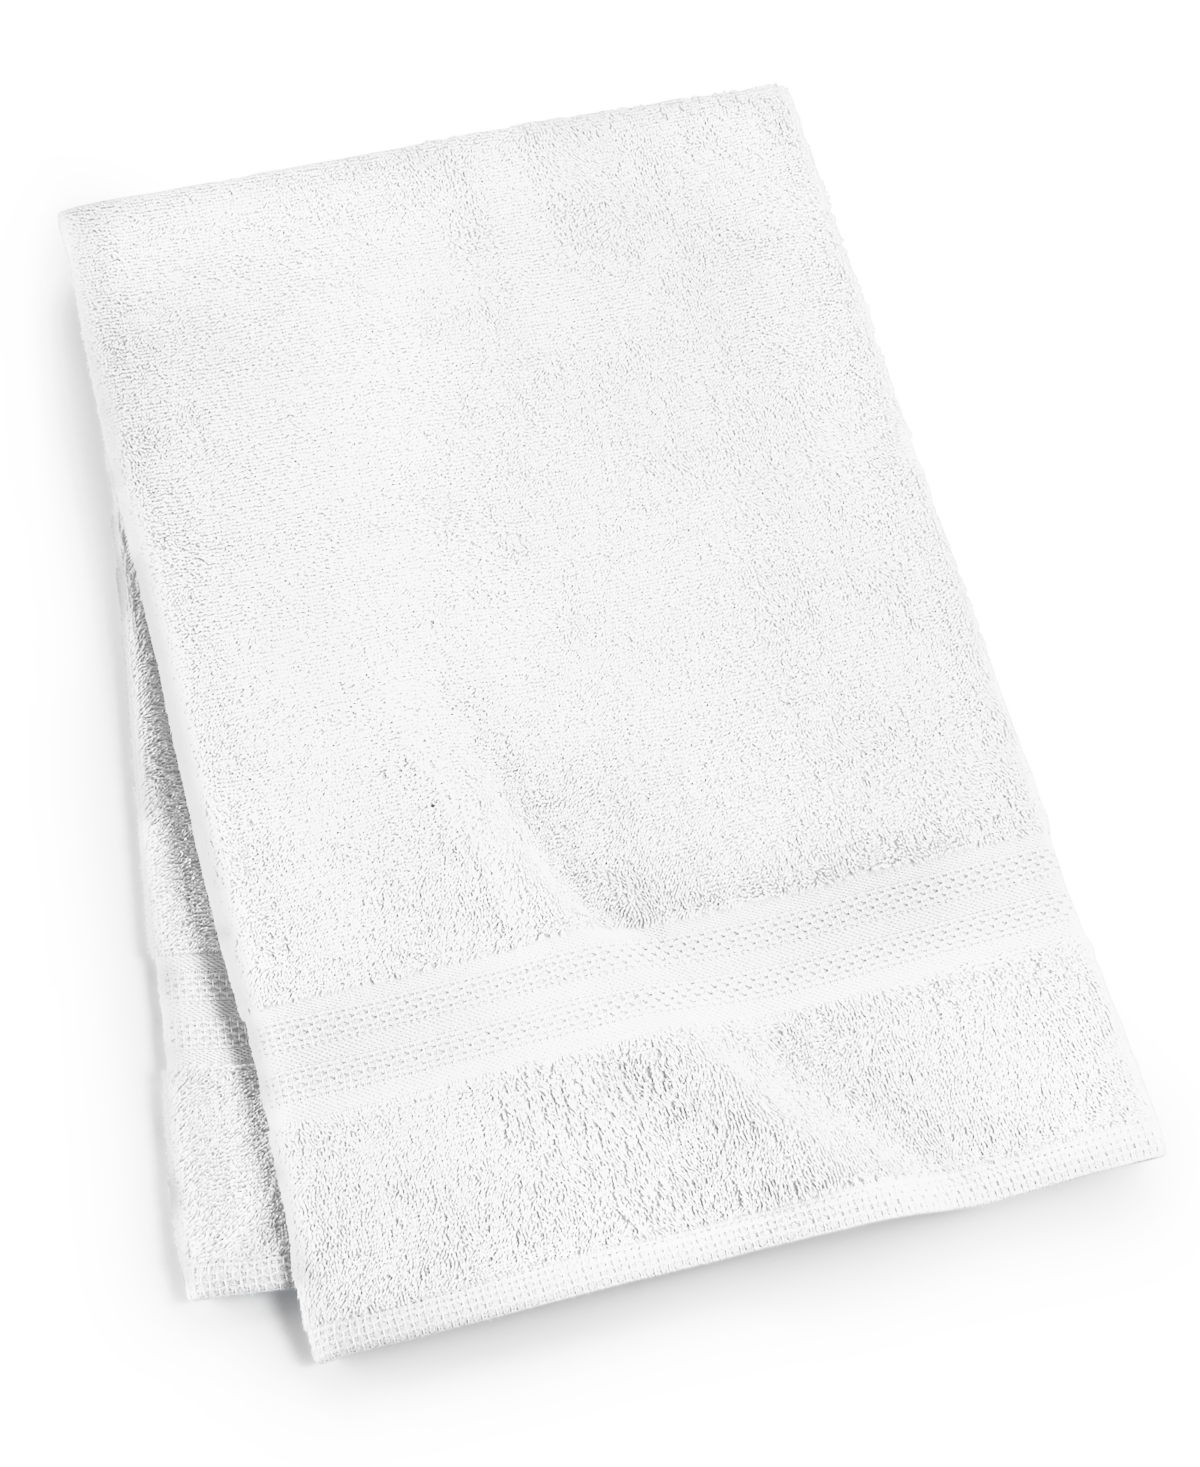 Sunham Soft Spun Cotton Solid Bath Towel, 27" X 52" In White